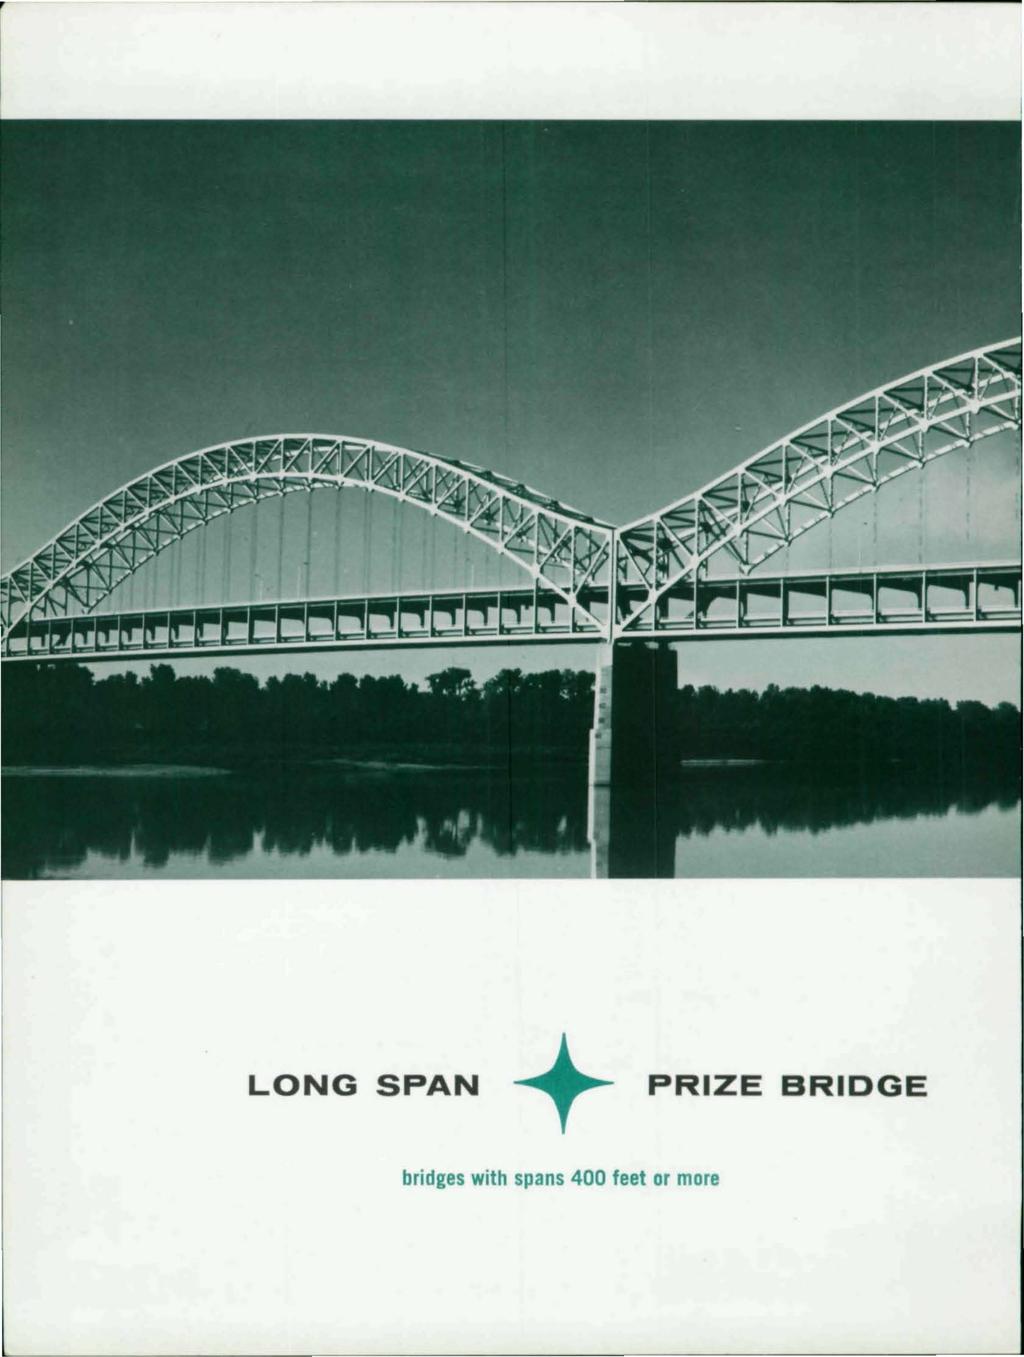 LONG SPAN + PRIZE BRIDGE